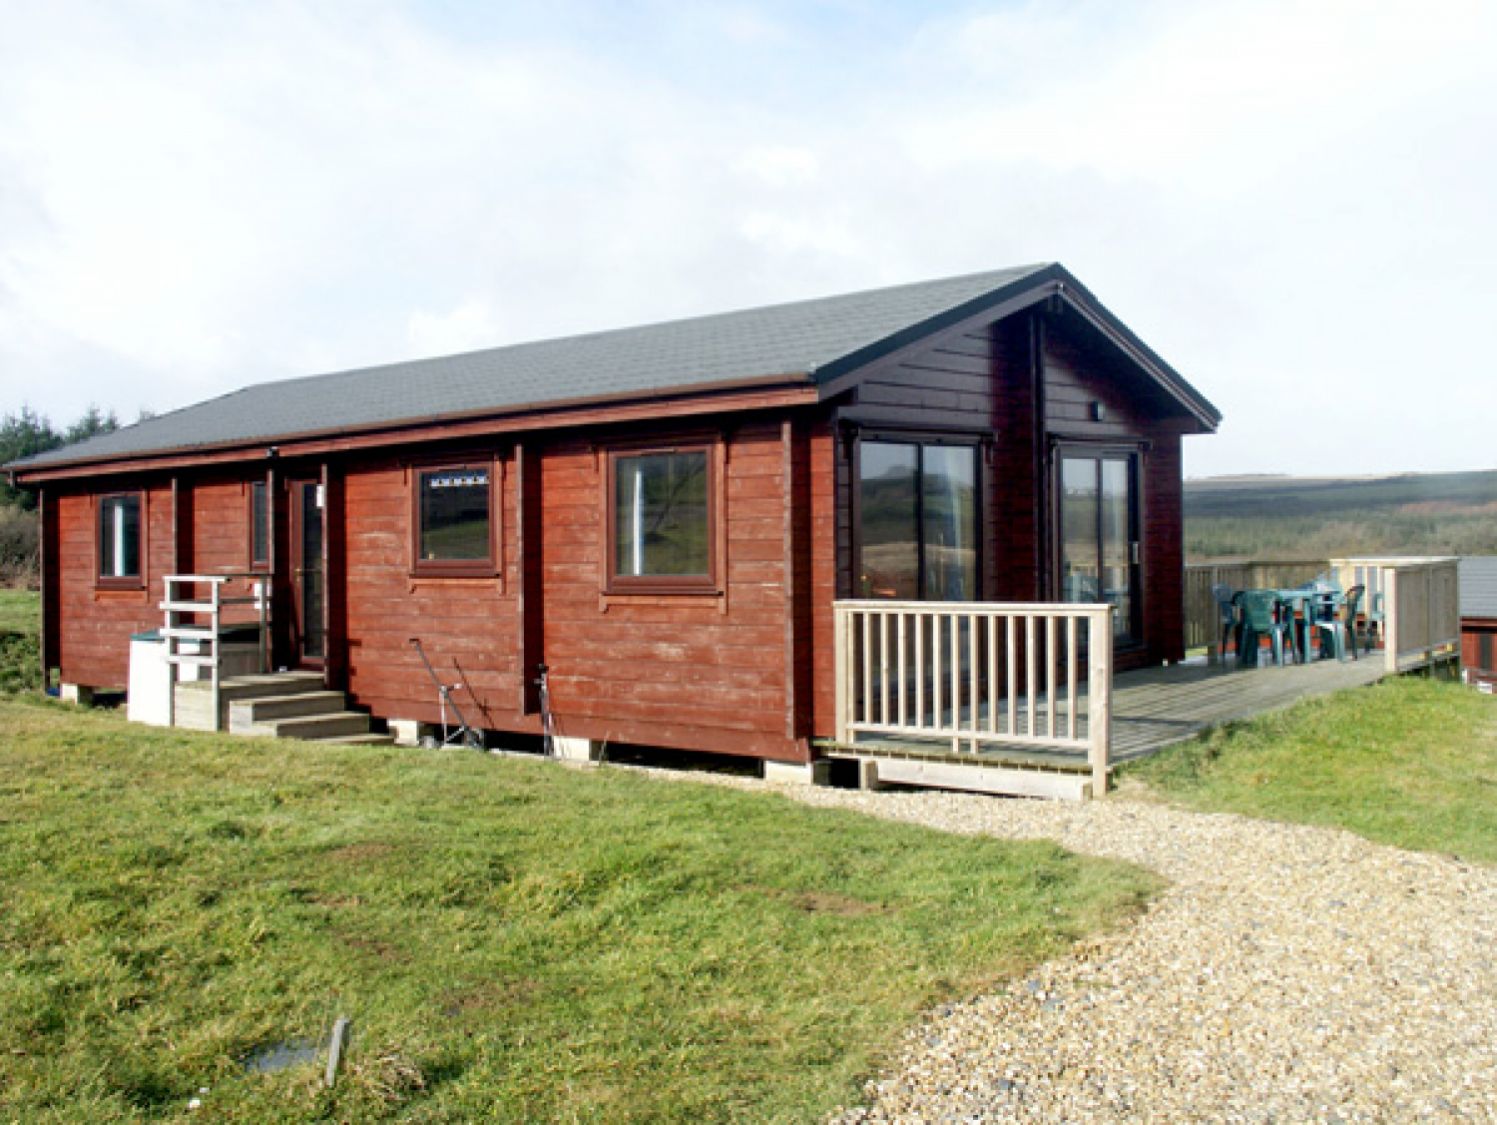 Hartland Lodge 59 - Holiday Lodges in Bideford, Devon, England